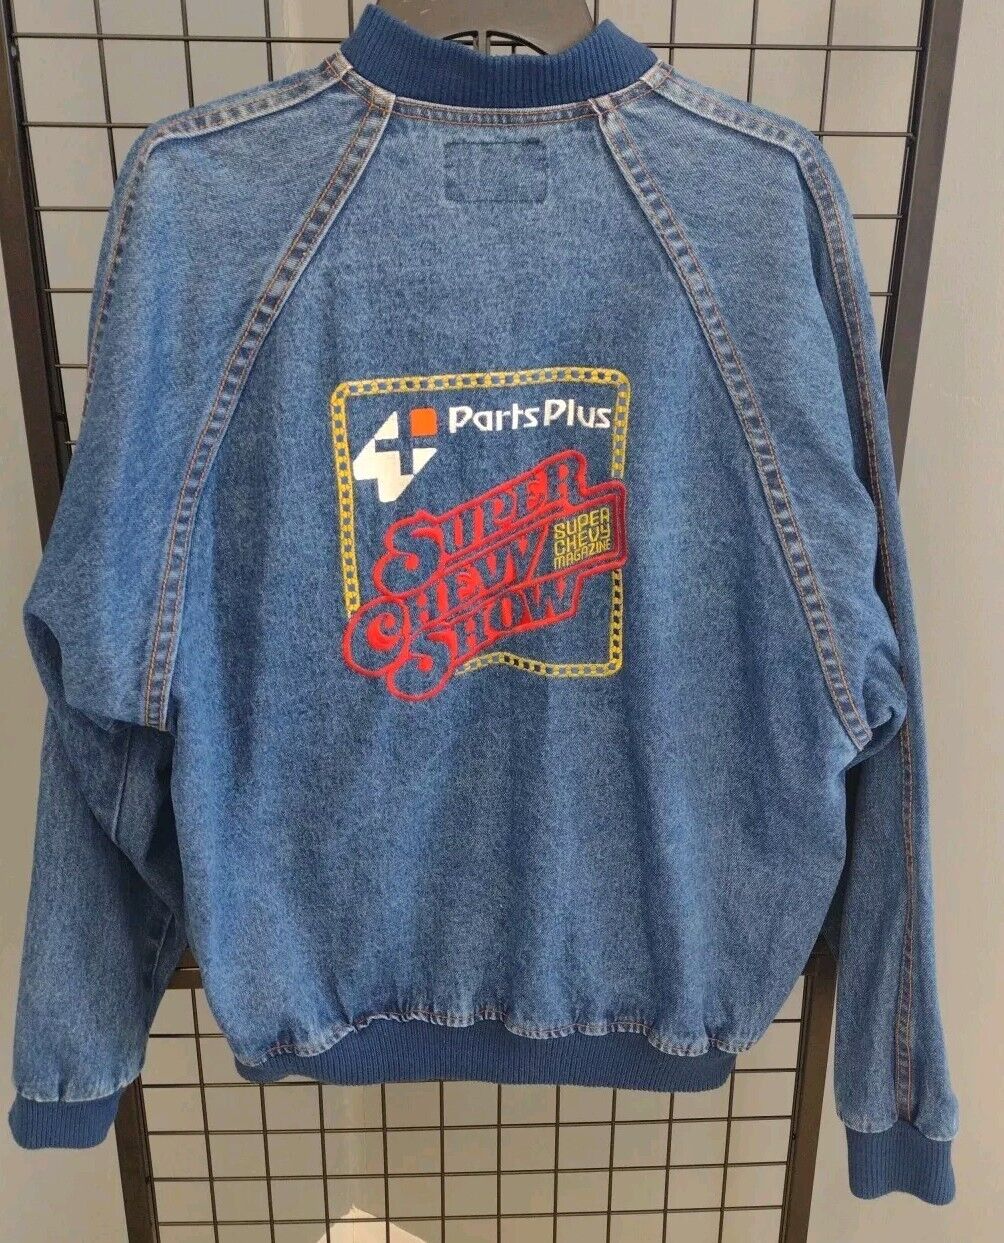 Vintage 96 Super Chevy Show Class Winner Adult Size Large Denim Blue Button Coat